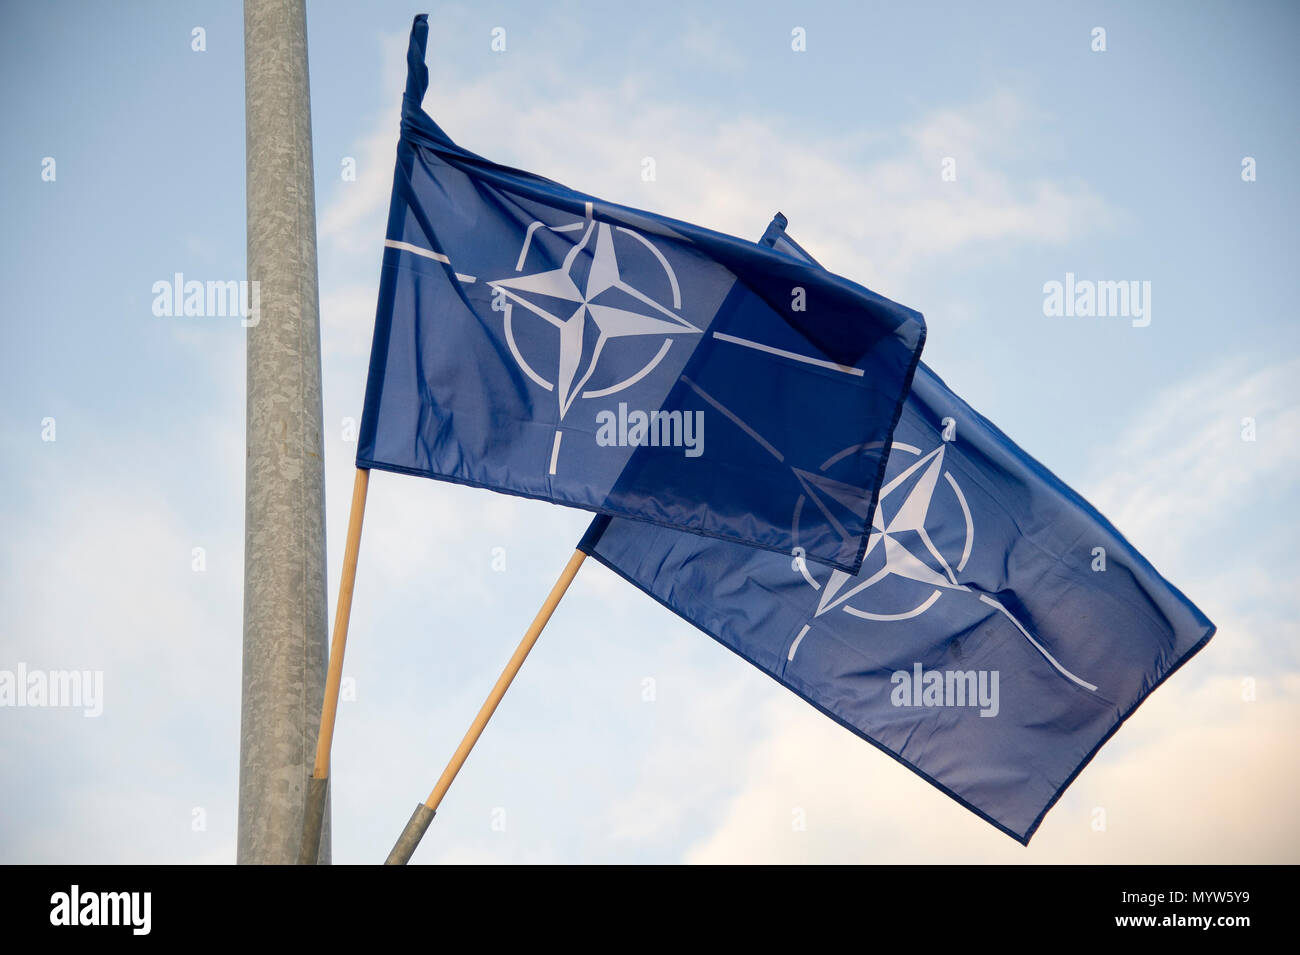 Organisation du Traité de l'Atlantique Nord drapeau de l'OTAN à Gdynia, Pologne. 14 janvier 2017 © Wojciech Strozyk / Alamy Stock Photo Banque D'Images